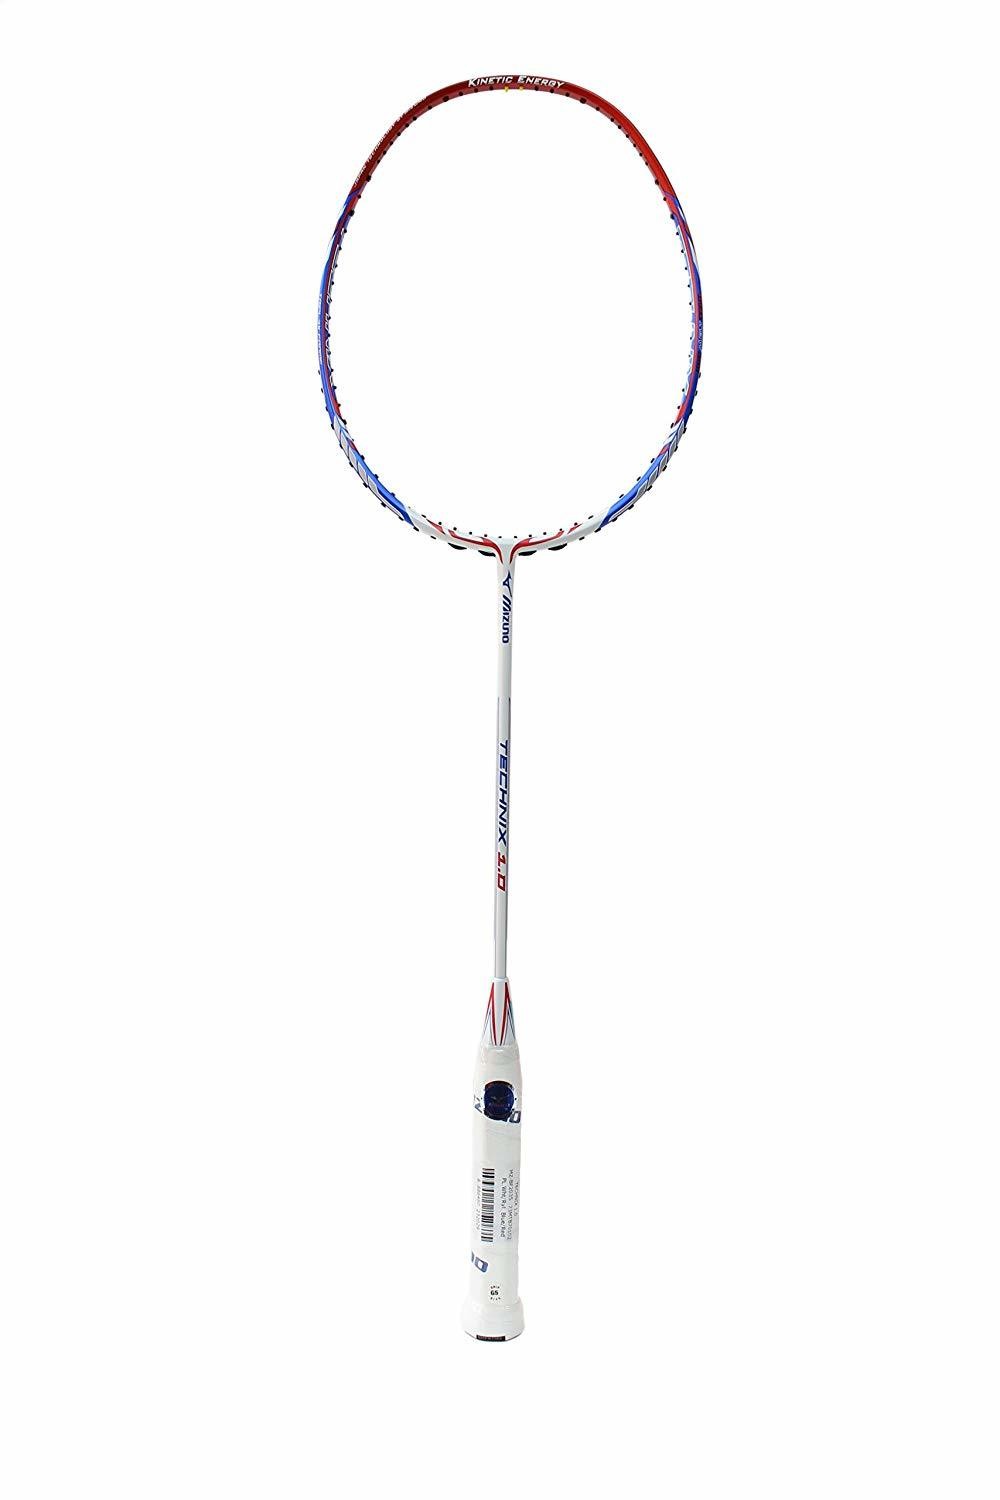 Mizuno Technix 1.0 Badminton Racquet